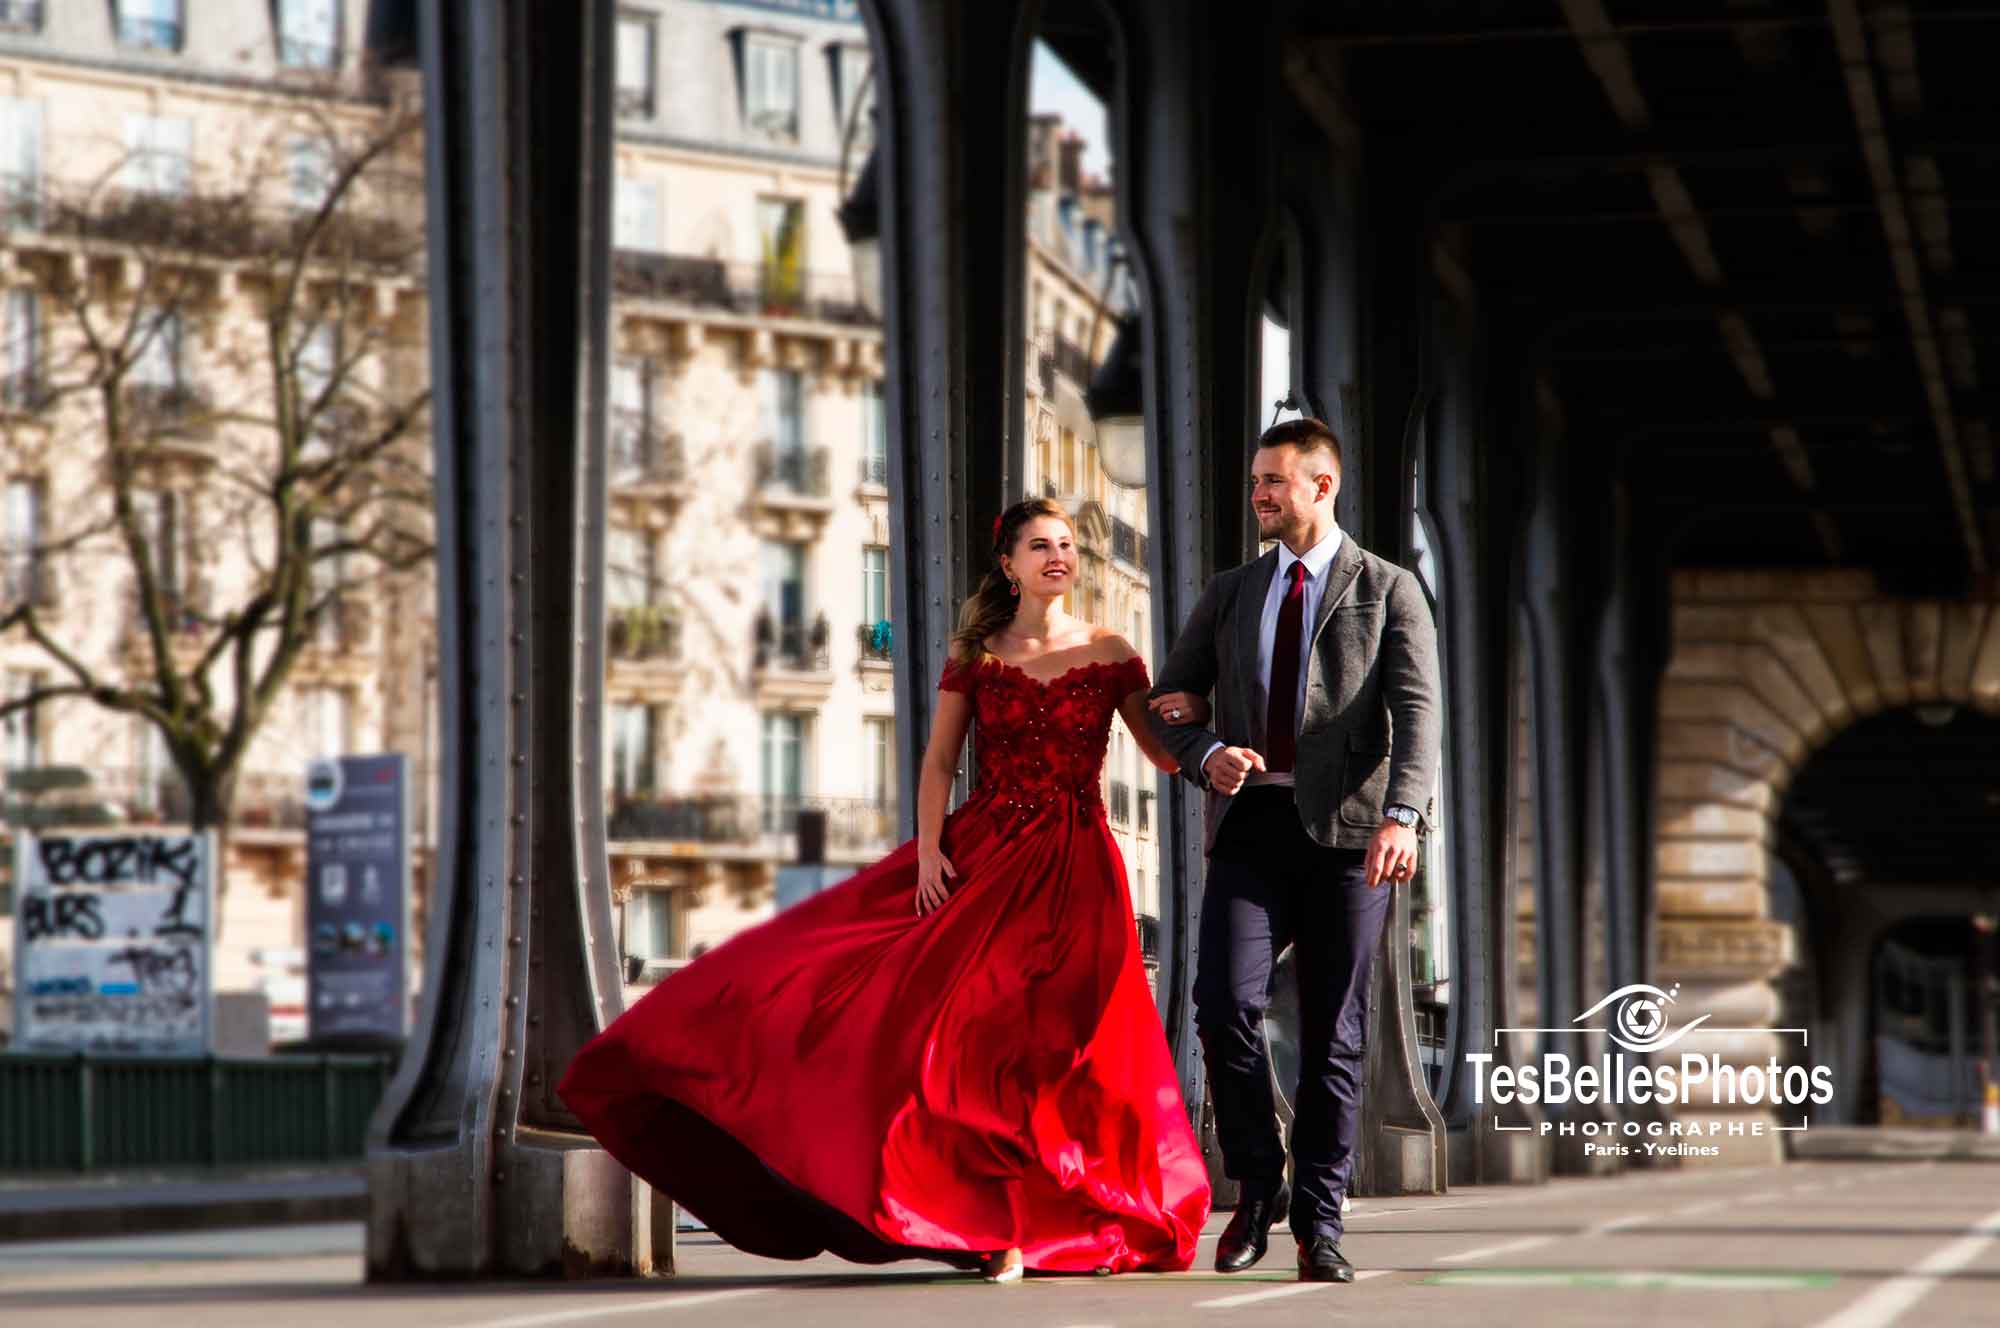 Photographe mariage Paris, photographe pour reportage photo de mariage à Paris